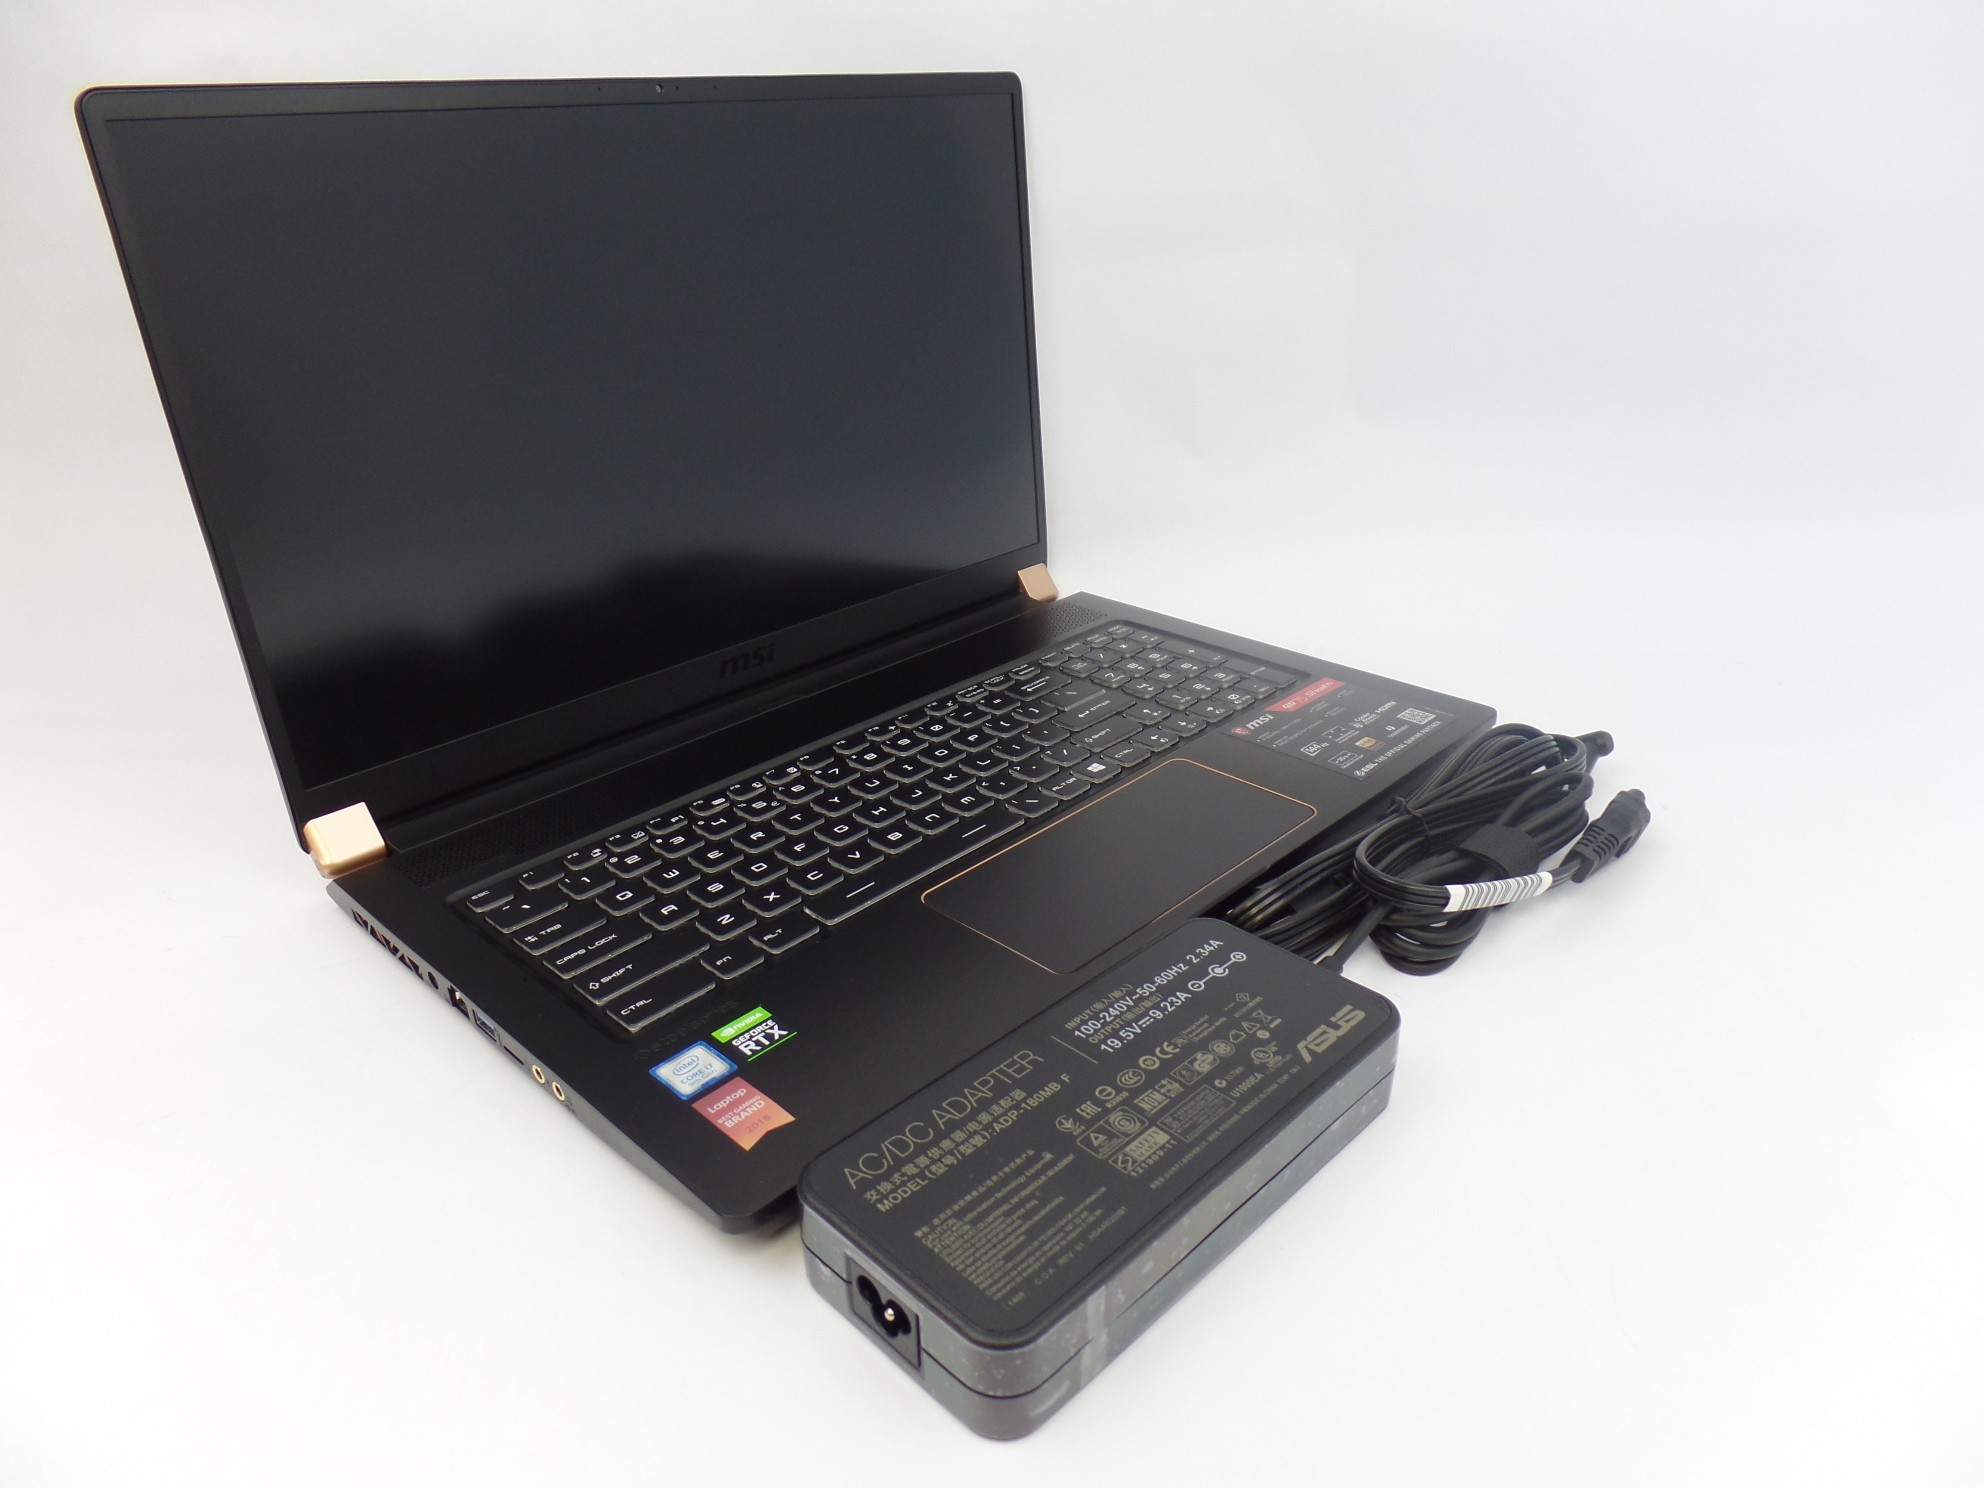 MSI GS75 Stealth 9SG 17.3" FHD 144Hz i7-9750H 16GB 1TB SSD RTX 2070 W10H Gaming